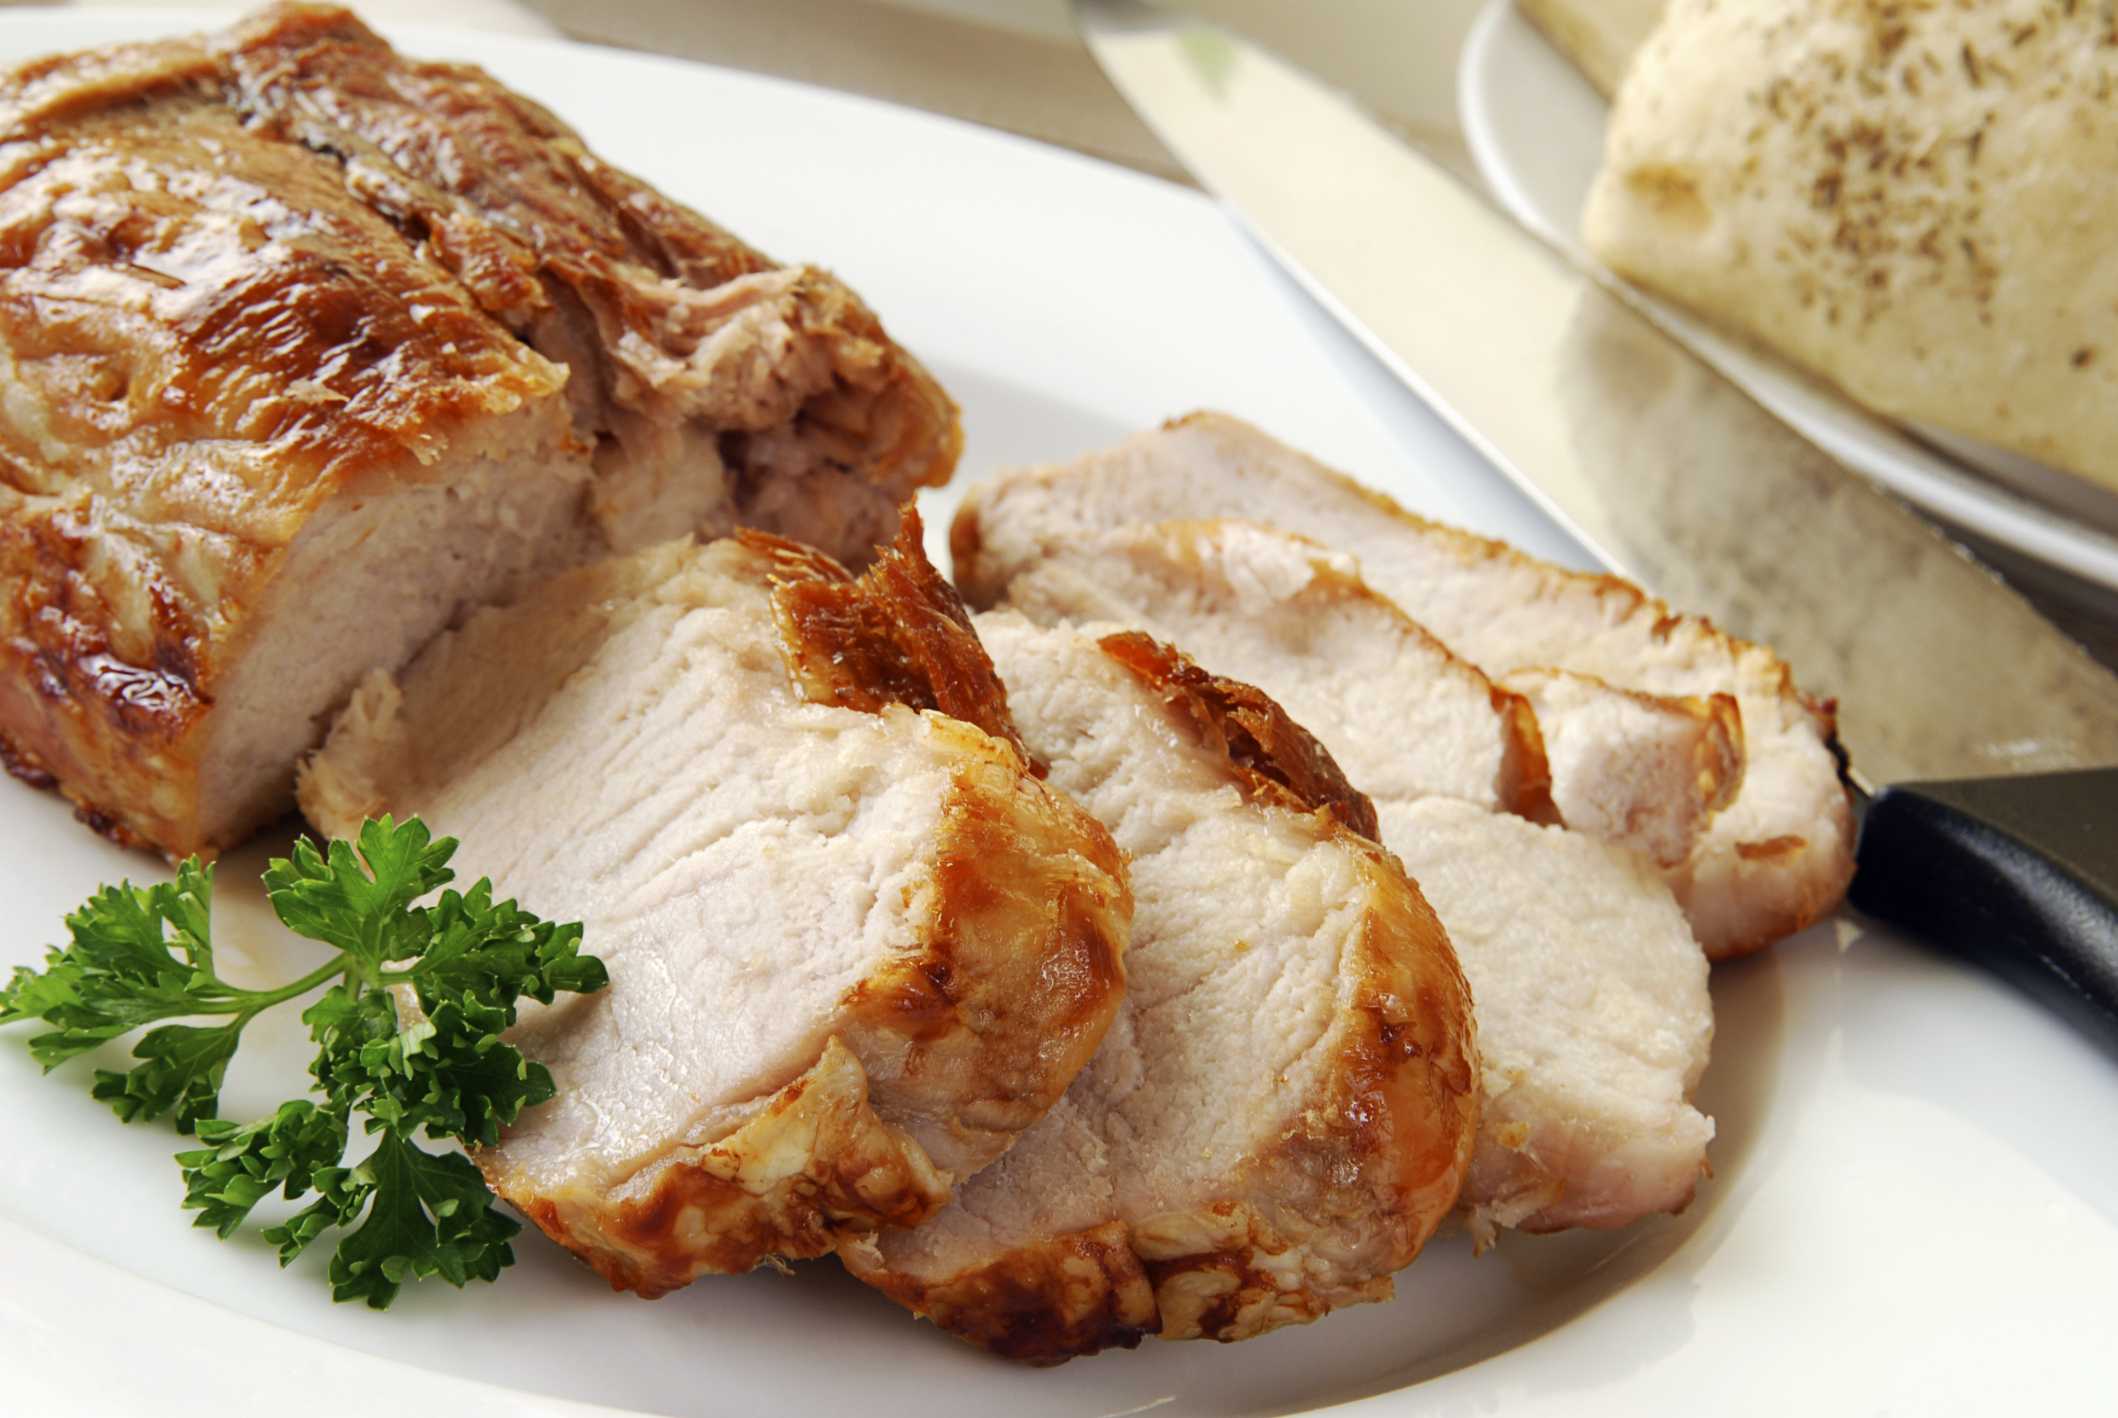 Описание свиной корейки с фото, показатель ее калорийности, а также перечень рецептов блюд с этим продуктом